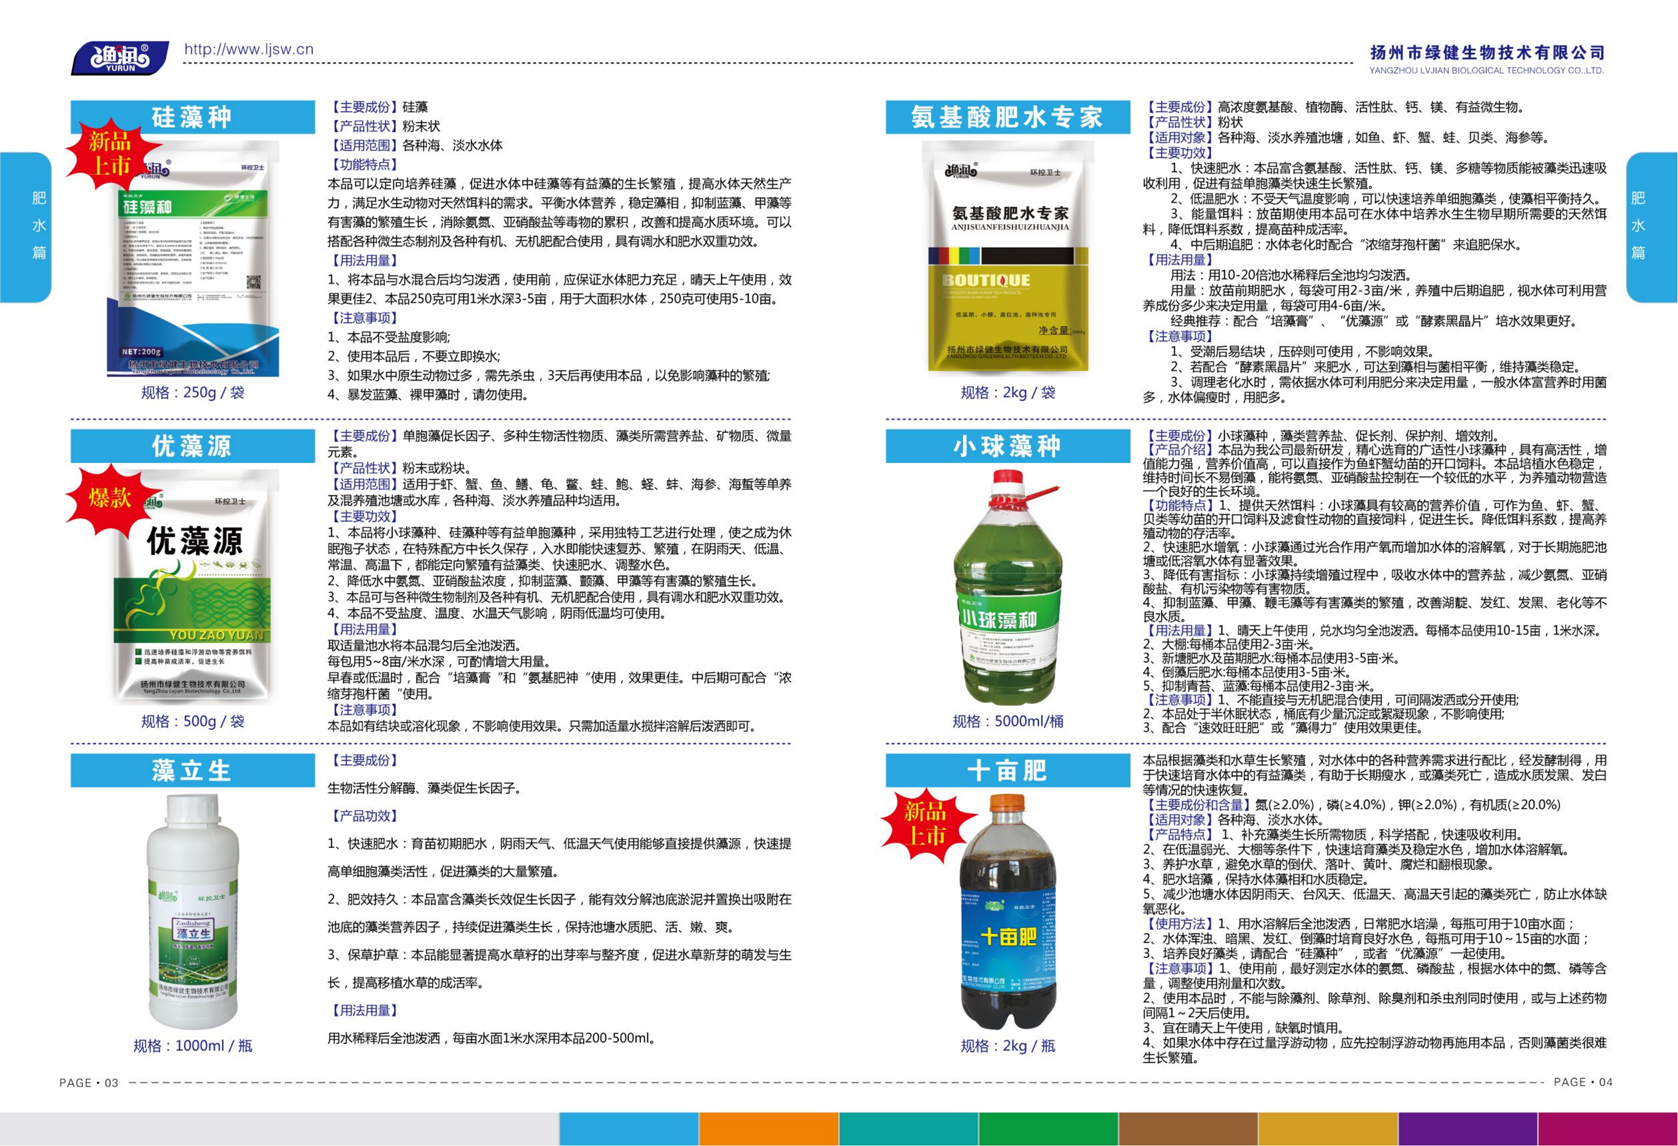 揚州市綠健生物技術有限公司第6版產品手冊_03